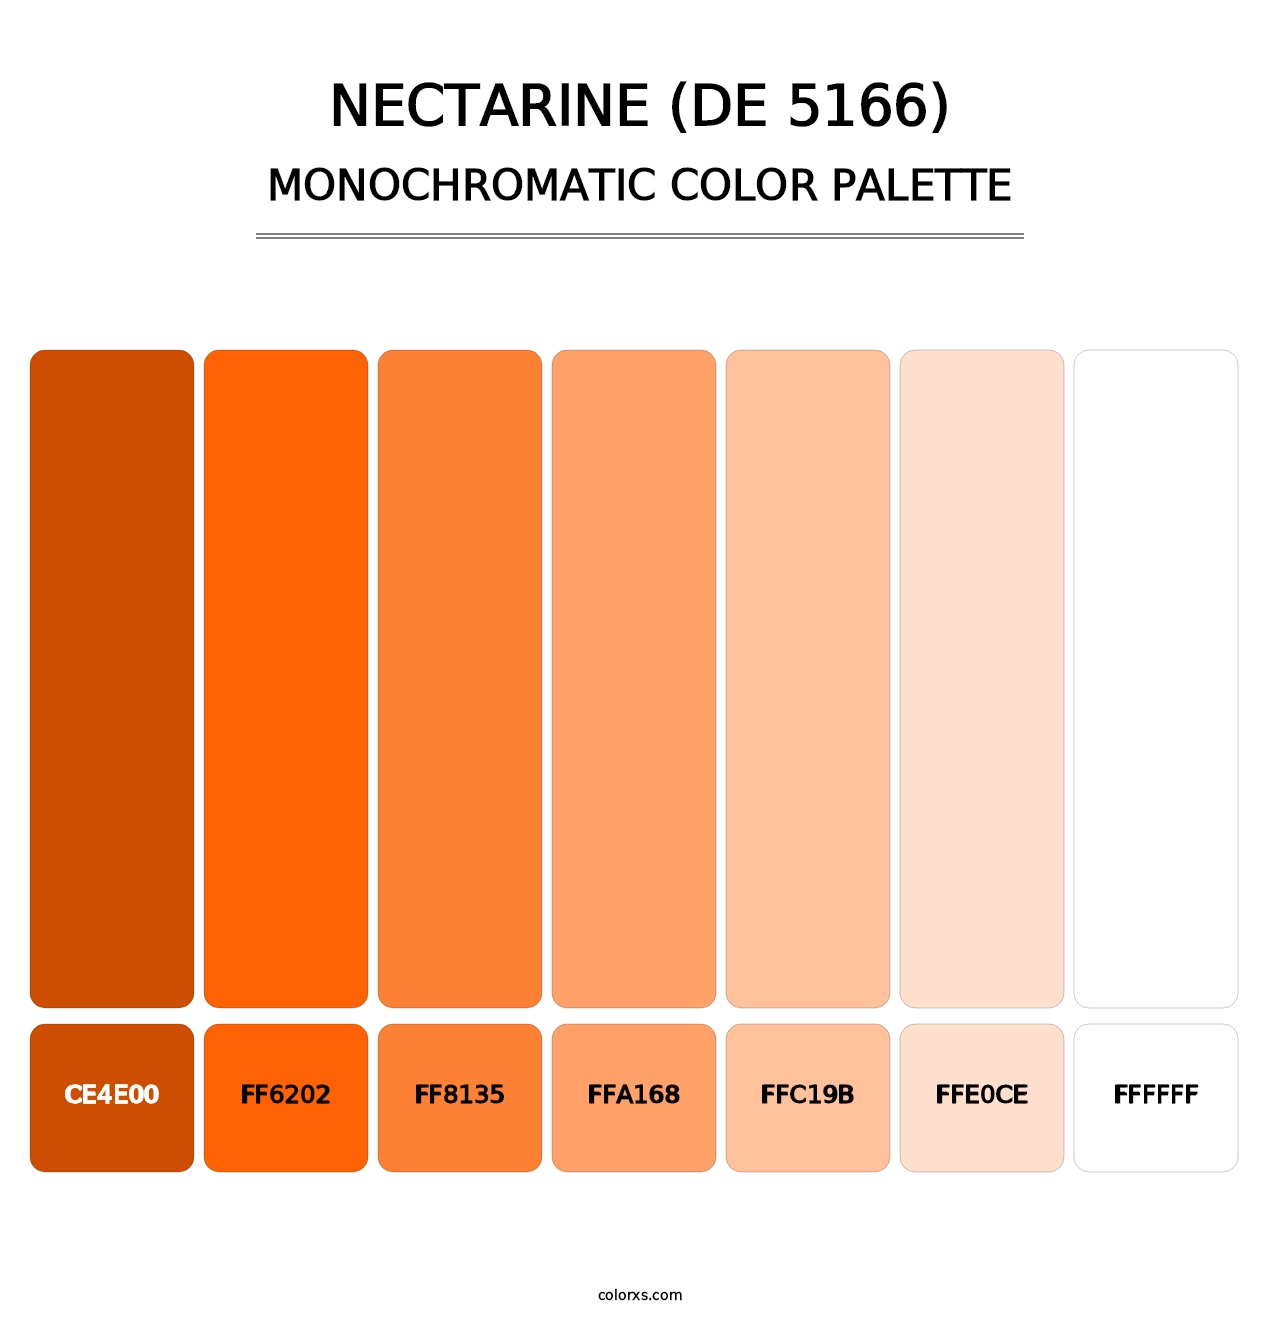 Nectarine (DE 5166) - Monochromatic Color Palette